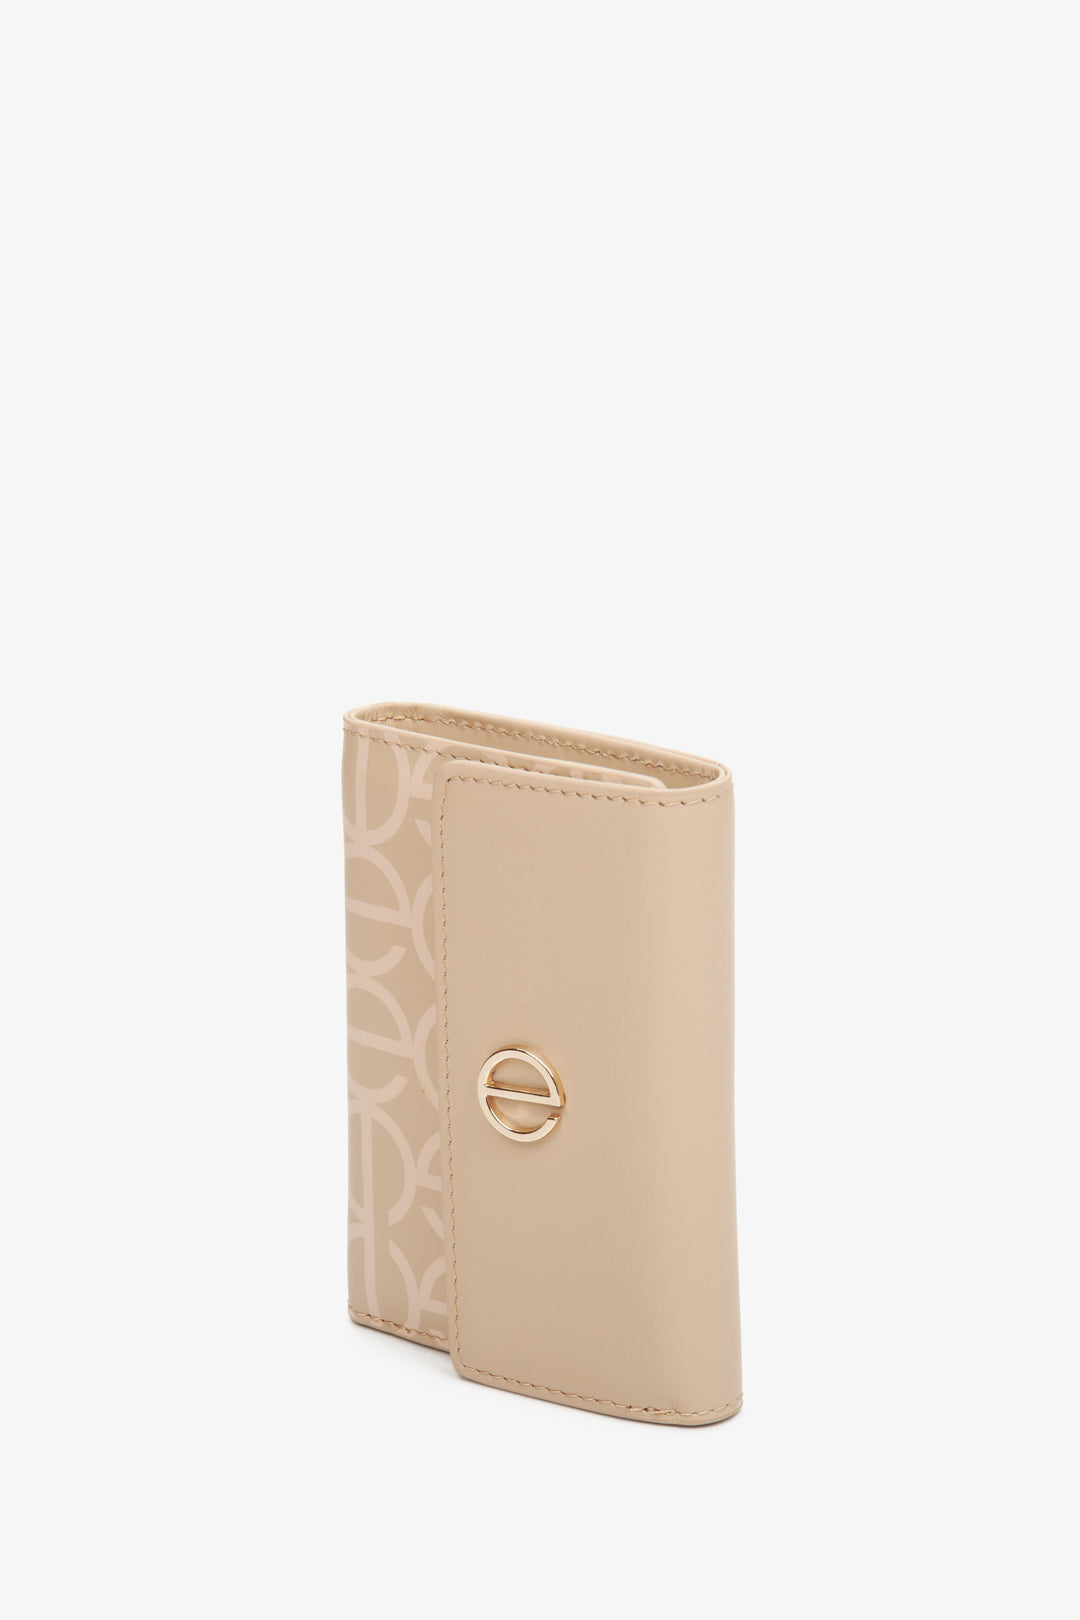 Beżowy, skórzany portfel damski średniej wielkości marki Estro.